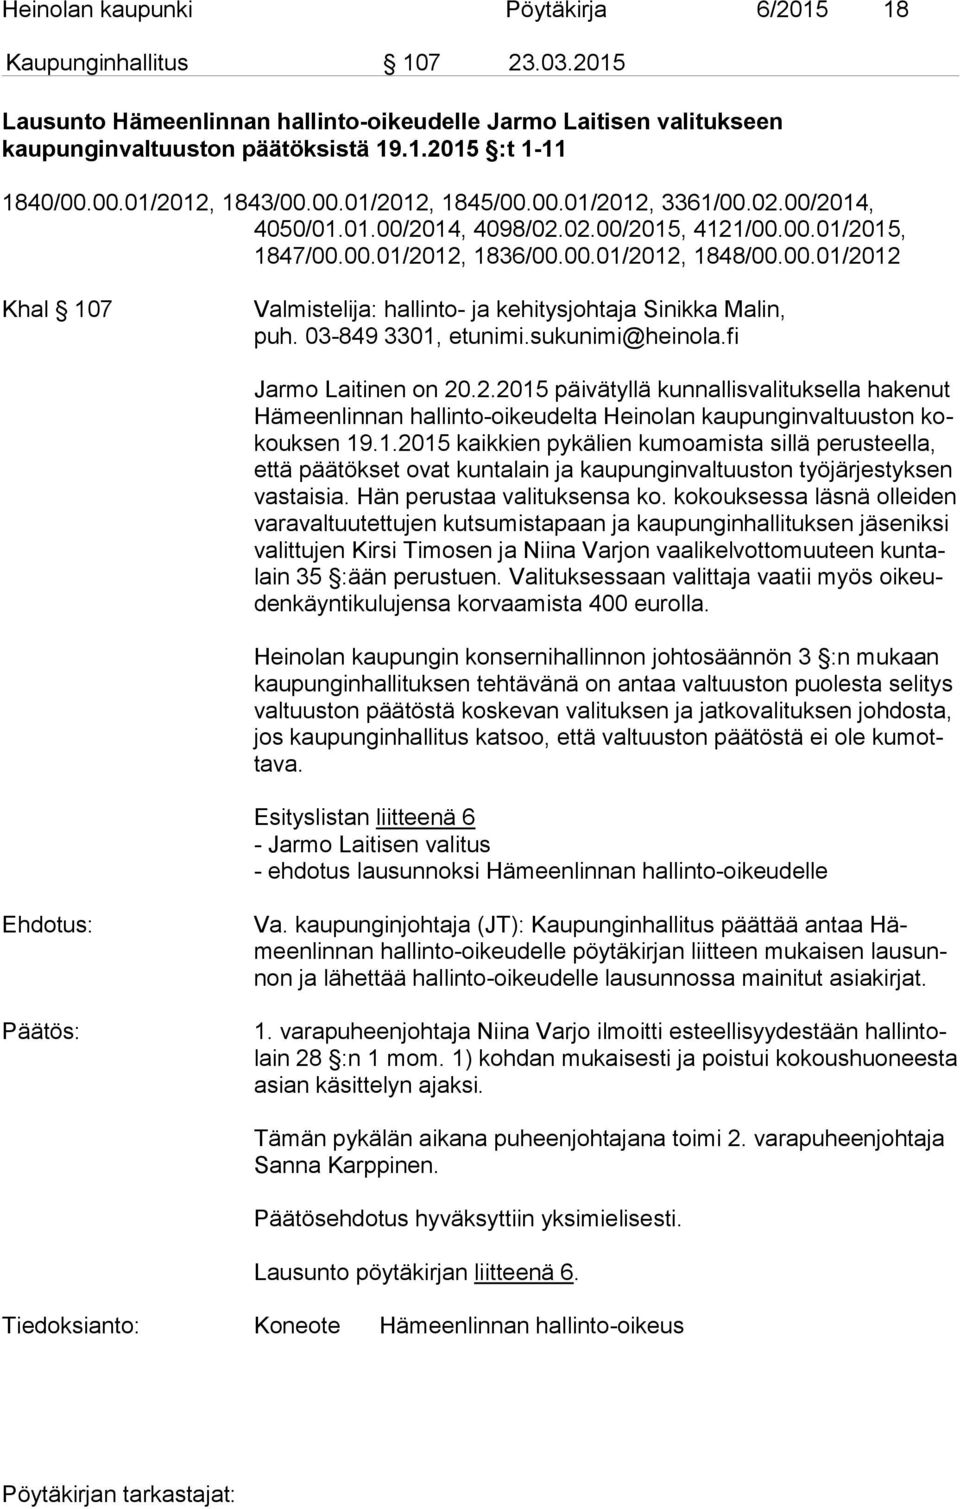 03-849 3301, etunimi.sukunimi@heinola.fi Jarmo Laitinen on 20.2.2015 päivätyllä kunnallisvalituksella hakenut Hä meen lin nan hallinto-oikeudelta Heinolan kaupunginvaltuuston kokouk sen 19.1.2015 kaikkien pykälien kumoamista sillä perusteella, et tä pää tök set ovat kuntalain ja kaupunginvaltuuston työjärjestyksen vas tai sia.